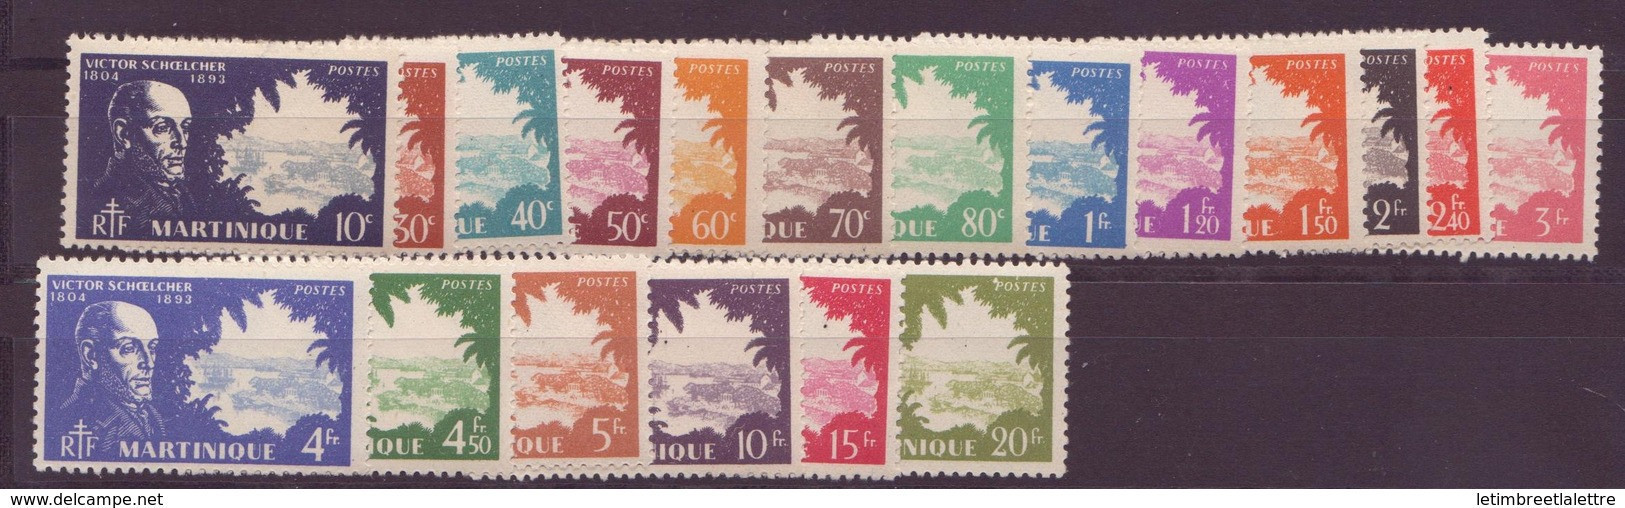 ⭐ Martinique - YT N° 199 à 217 ** - Neuf Sans Charnière - 1938 ⭐ - Neufs